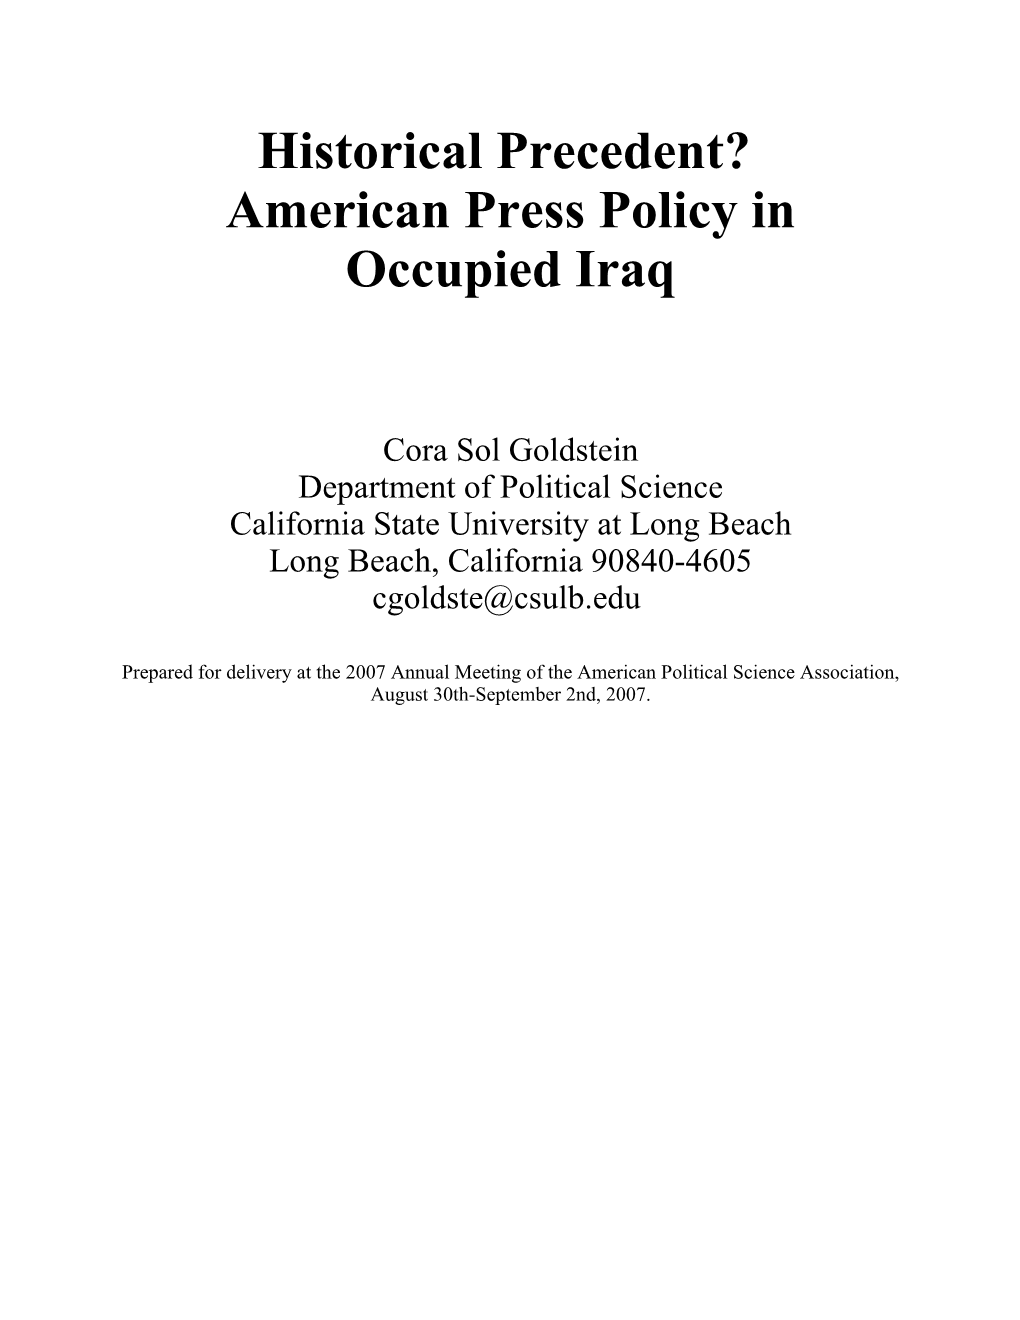 Historical Precedent. American Press Policy in Occupied Iraq.Pdf